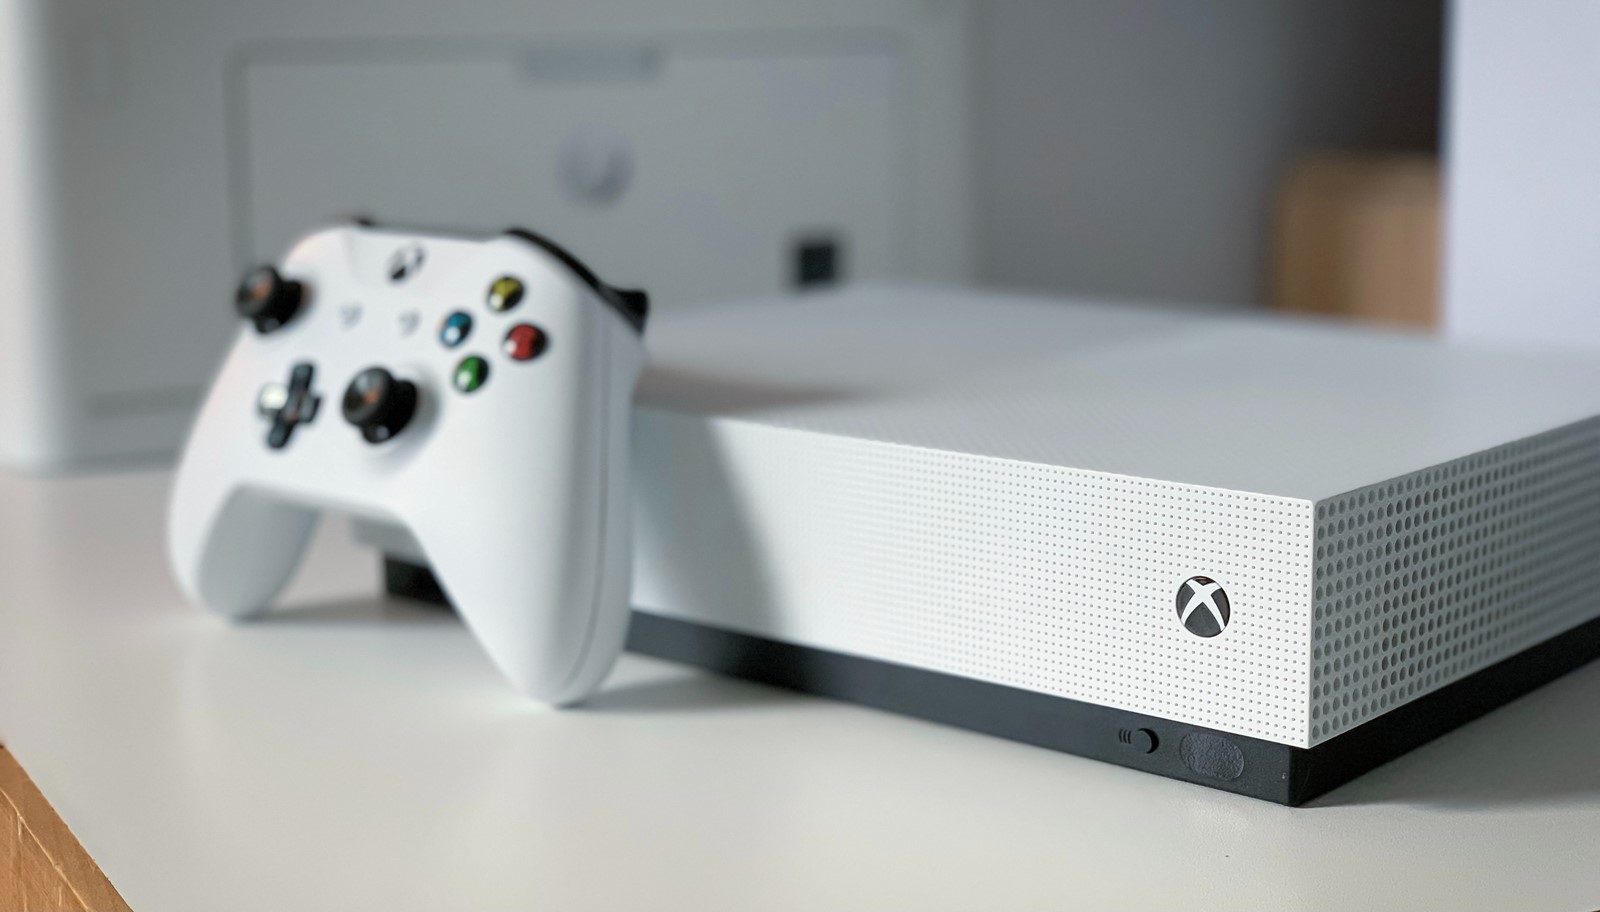 Potvrđeno je: Microsoft prekinuo proizvodnju svih Xbox One konzola još  krajem 2020. - Igraće konzole @ Bug.hr